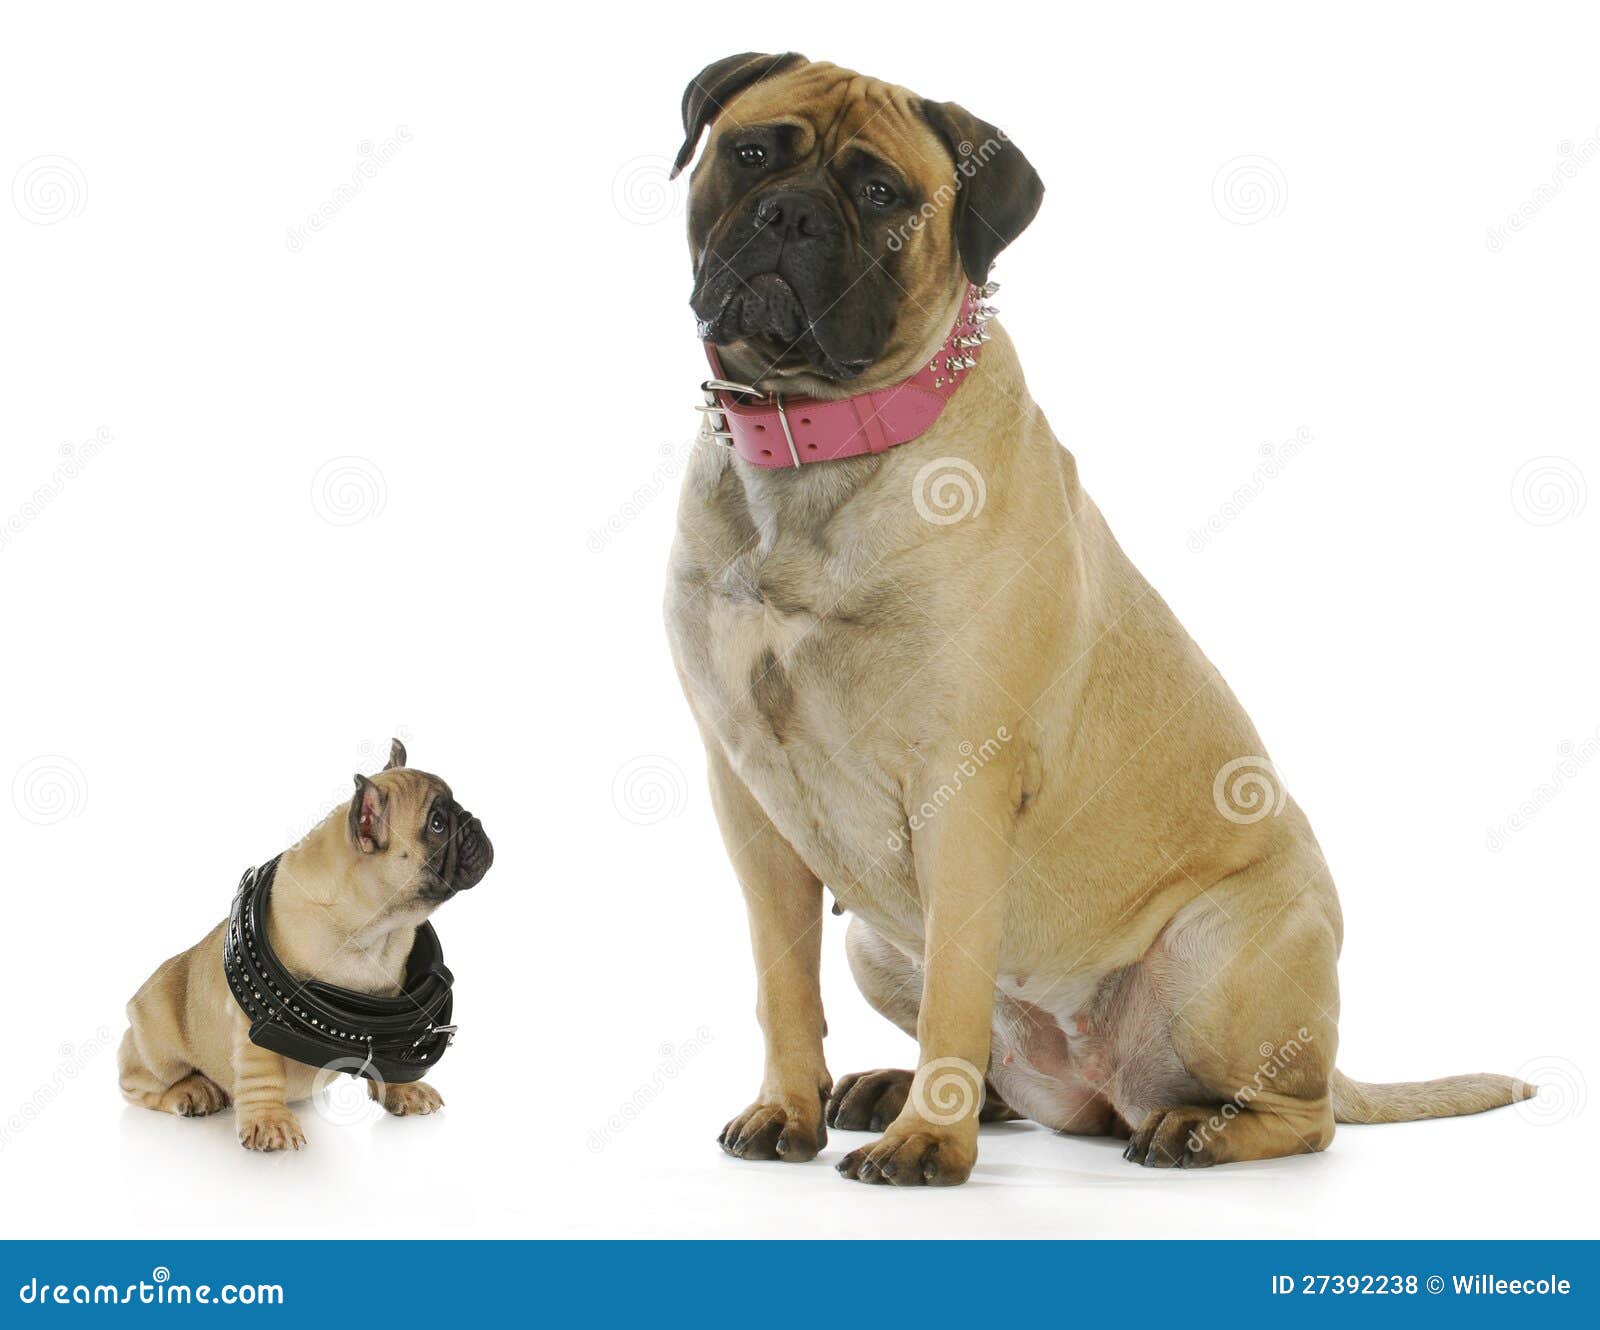 big and small dog